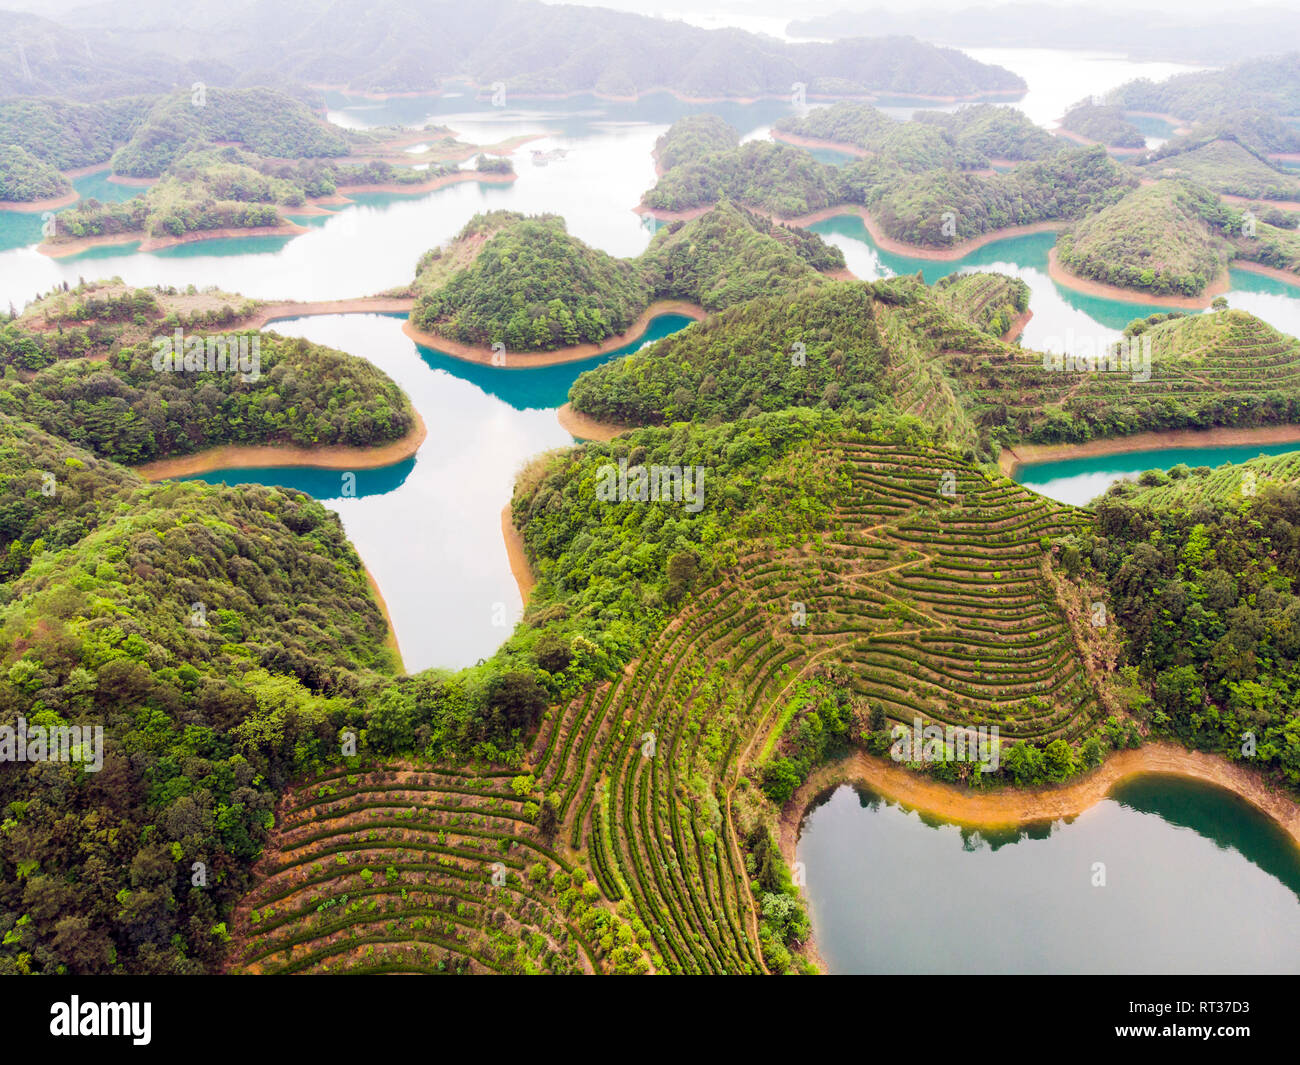 Vue aérienne de la Thousand Island Lake. Vue d'oiseau de l'eau douce Qiandaohu. Les champs de thé sur les îles de Chun'an Pays, Hangzhou, Province de Zhejiang, Chine M Banque D'Images